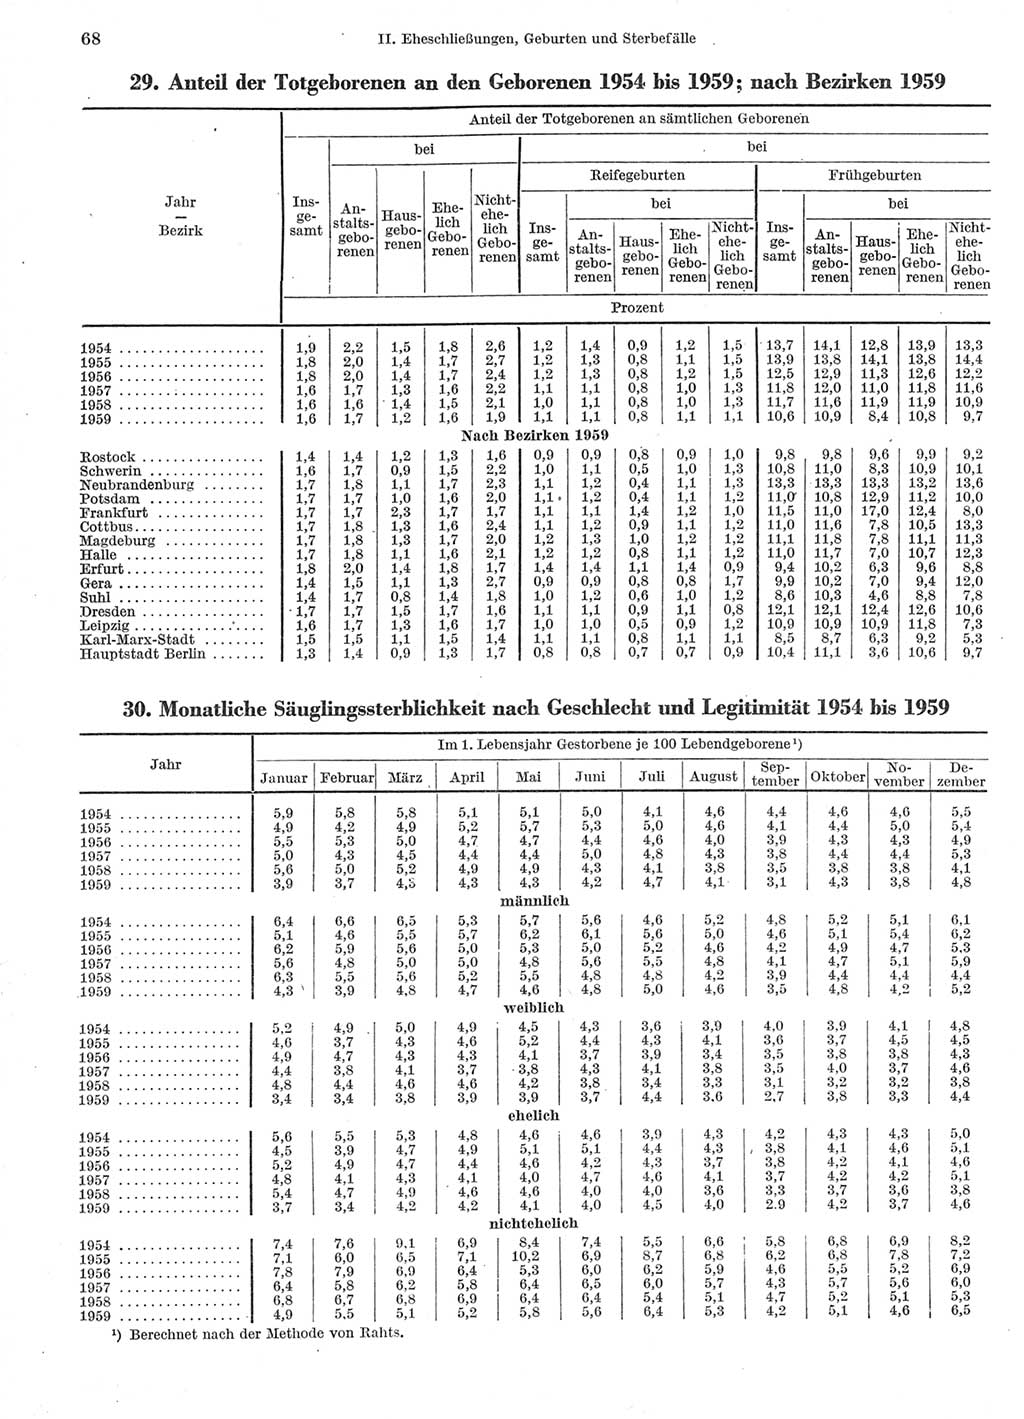 Statistisches Jahrbuch der Deutschen Demokratischen Republik (DDR) 1960-1961, Seite 68 (Stat. Jb. DDR 1960-1961, S. 68)